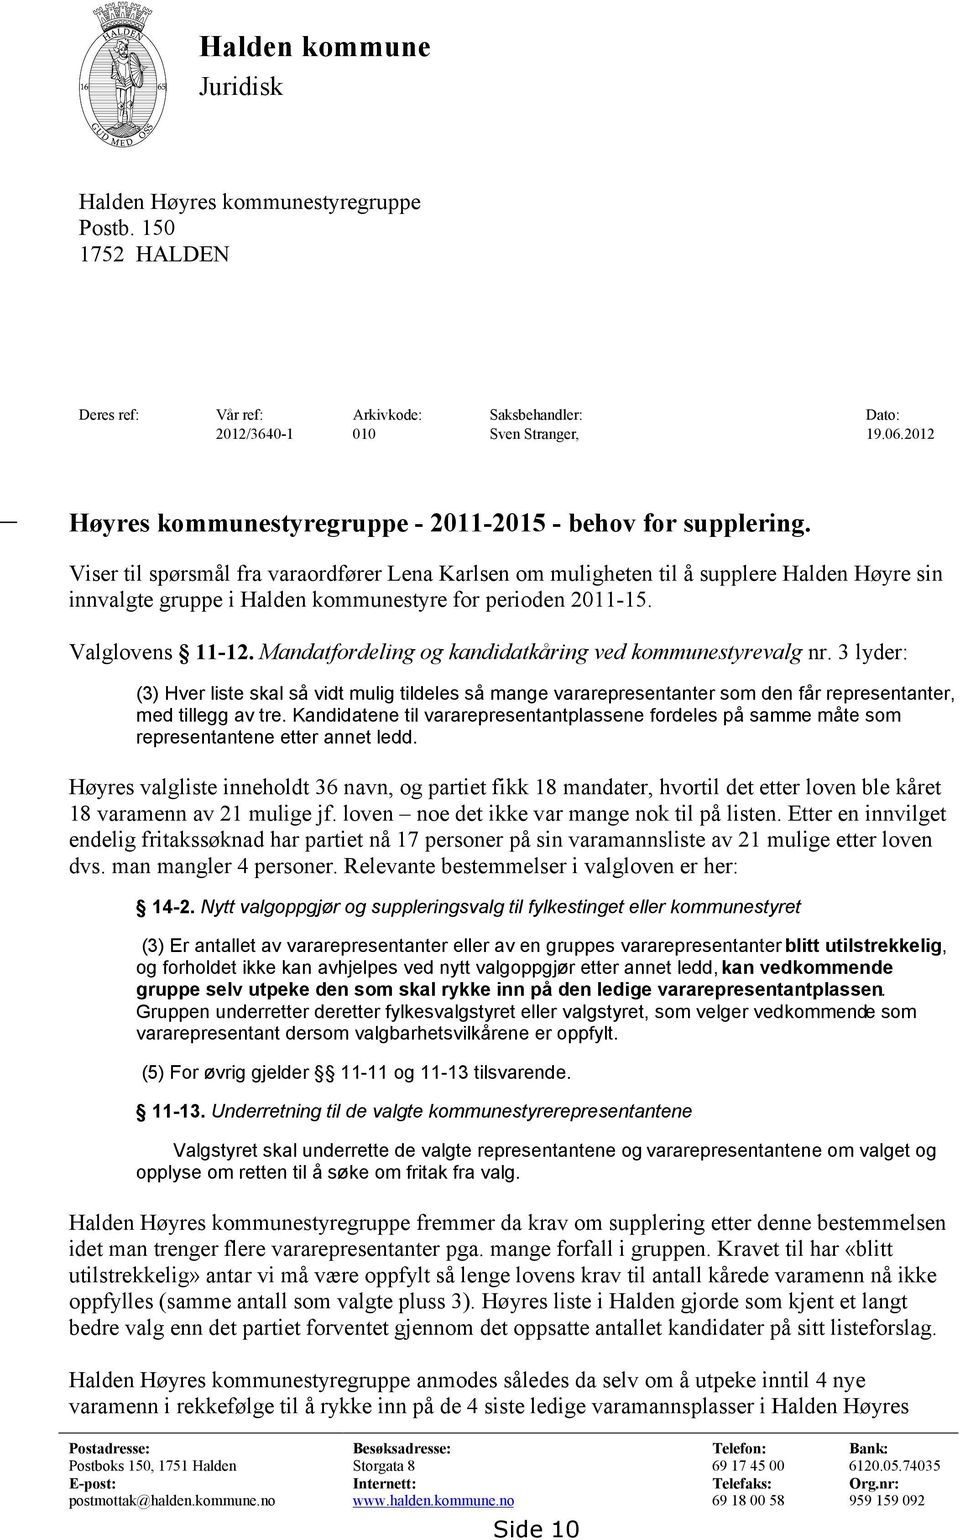 Viser til spørsmål fra varaordfører Lena Karlsen om muligheten til å supplere Halden Høyre sin innvalgte gruppe i Halden kommunestyre for perioden 2011-15. Valglovens 11-12.